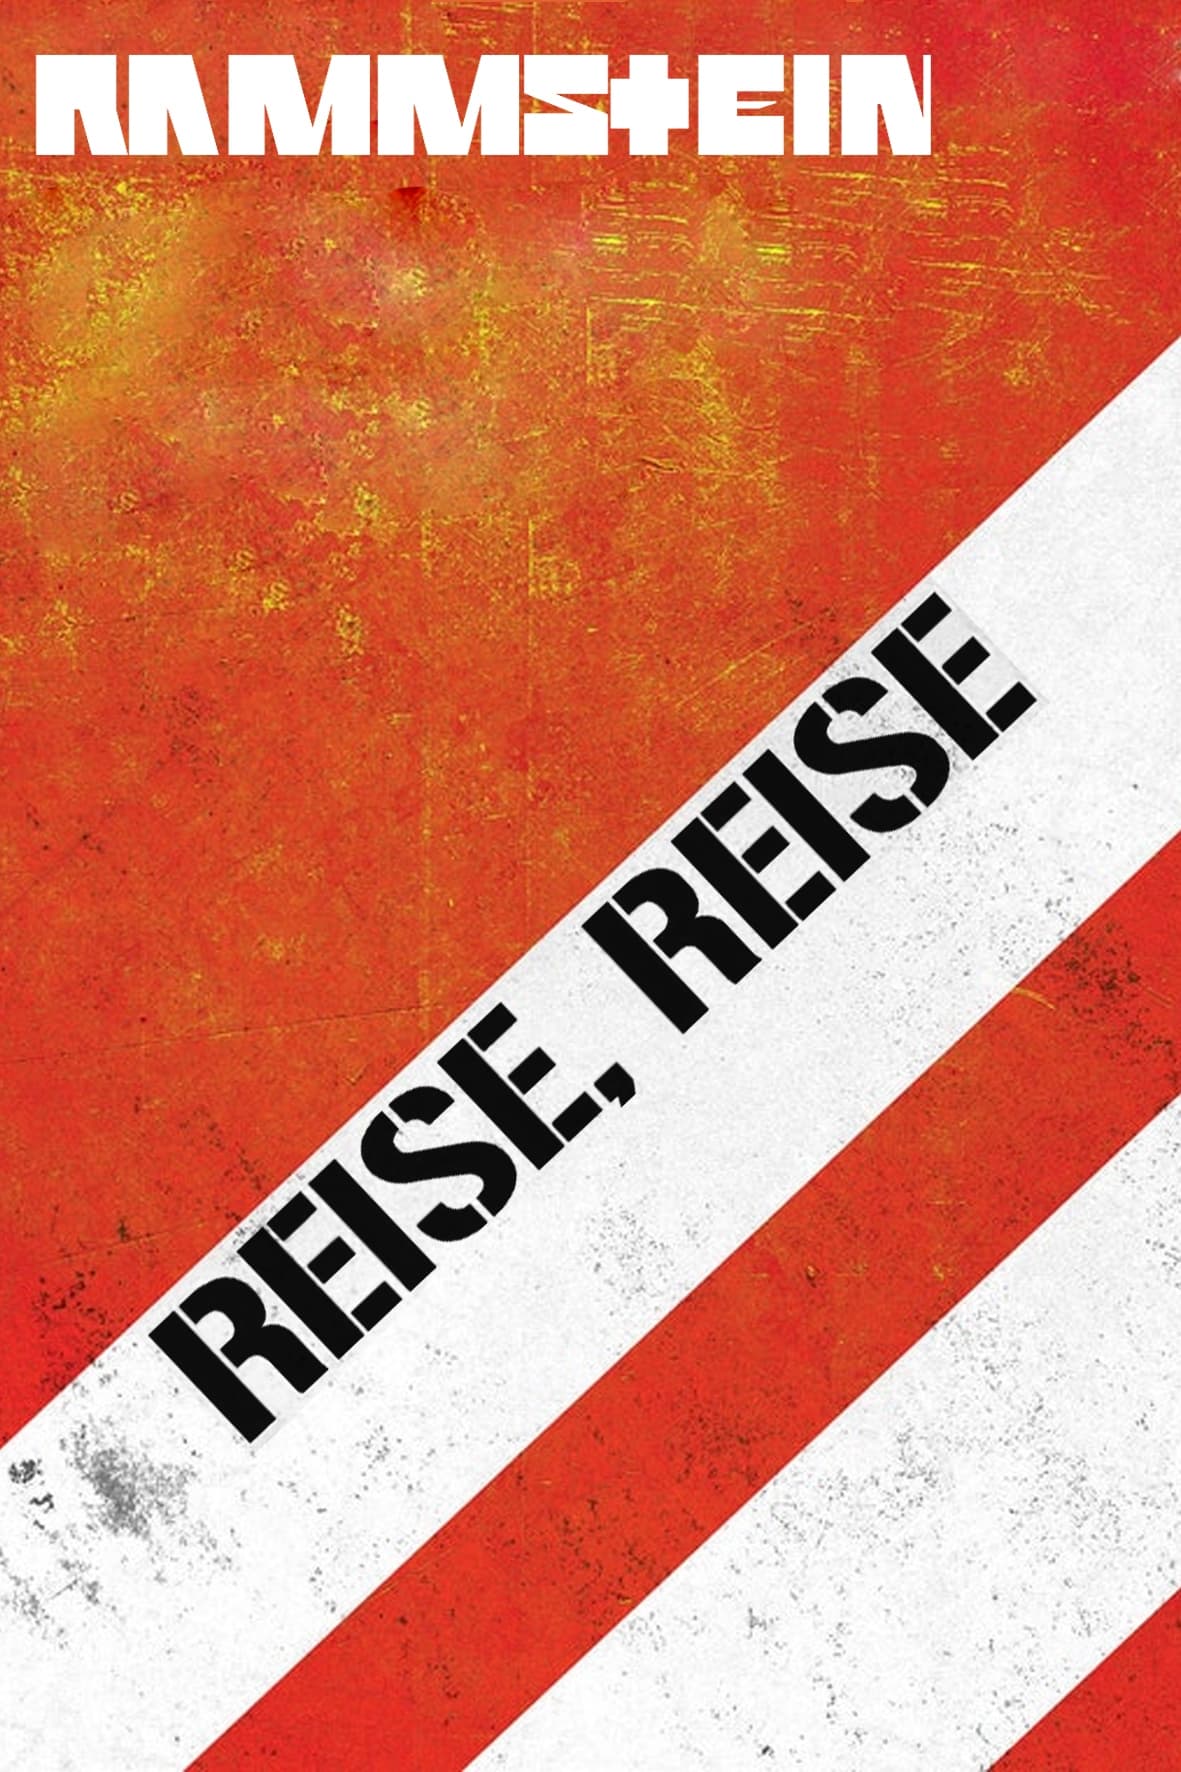 Rammstein: The Making of the Album "Reise, Reise"